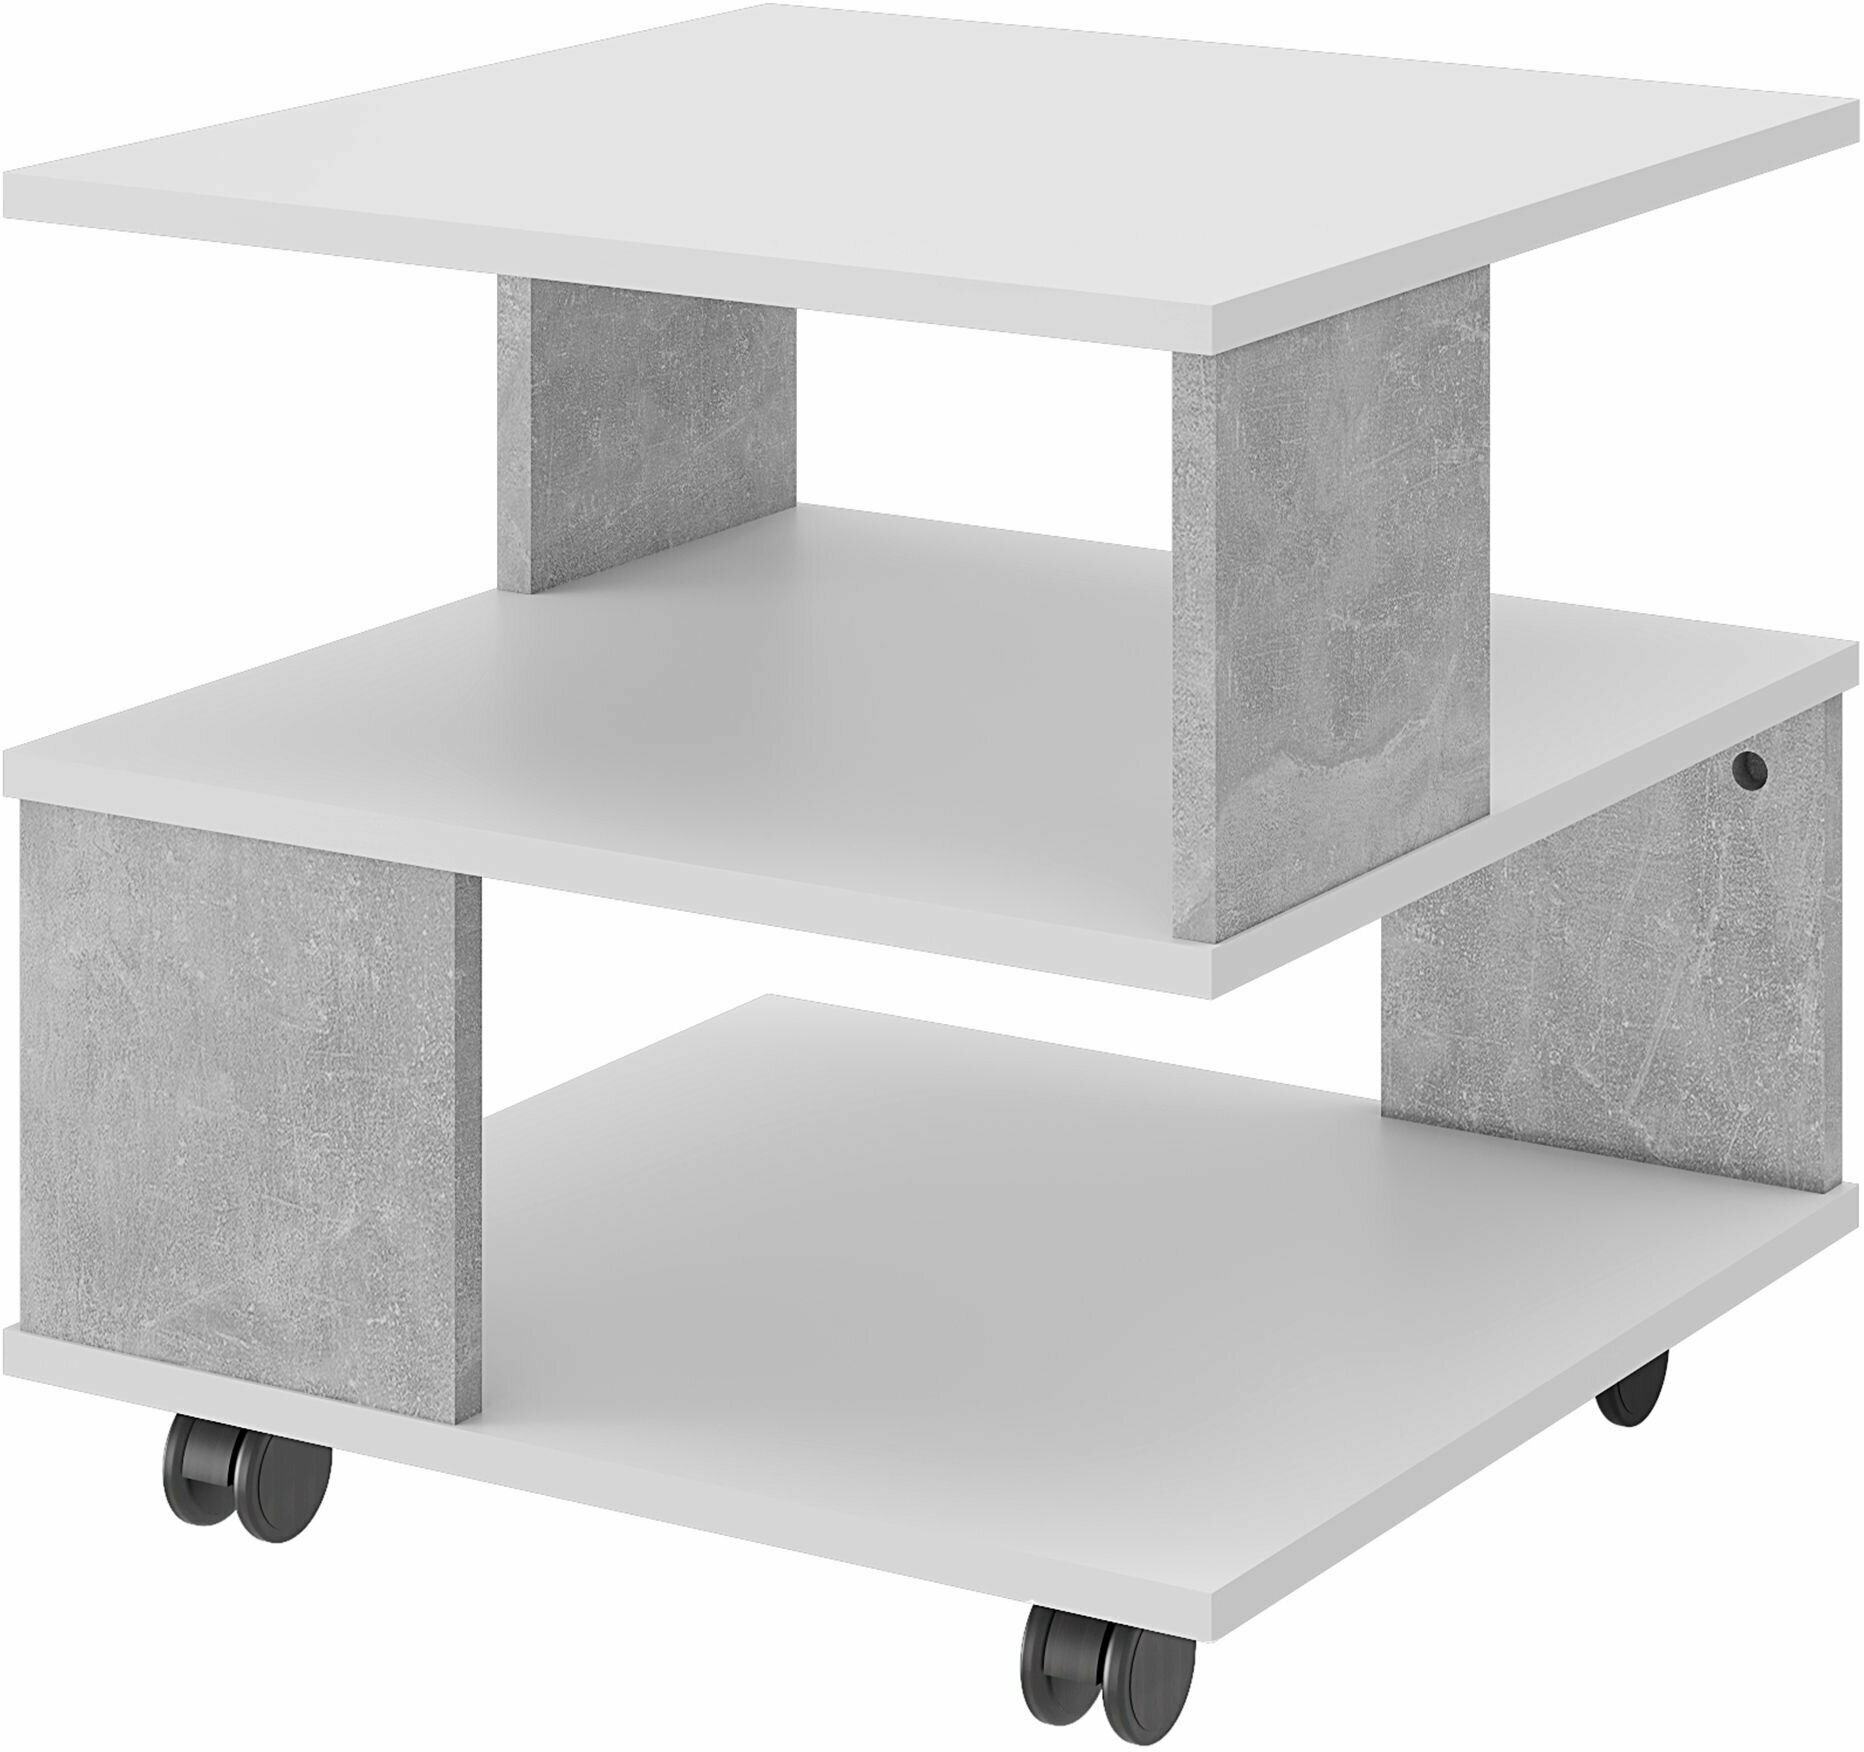 Журнальный столик, сервировочный стол Beneli алекс, квадратный, Белый/Бетон, 49,5х49,5х48,3 см, 1 шт.